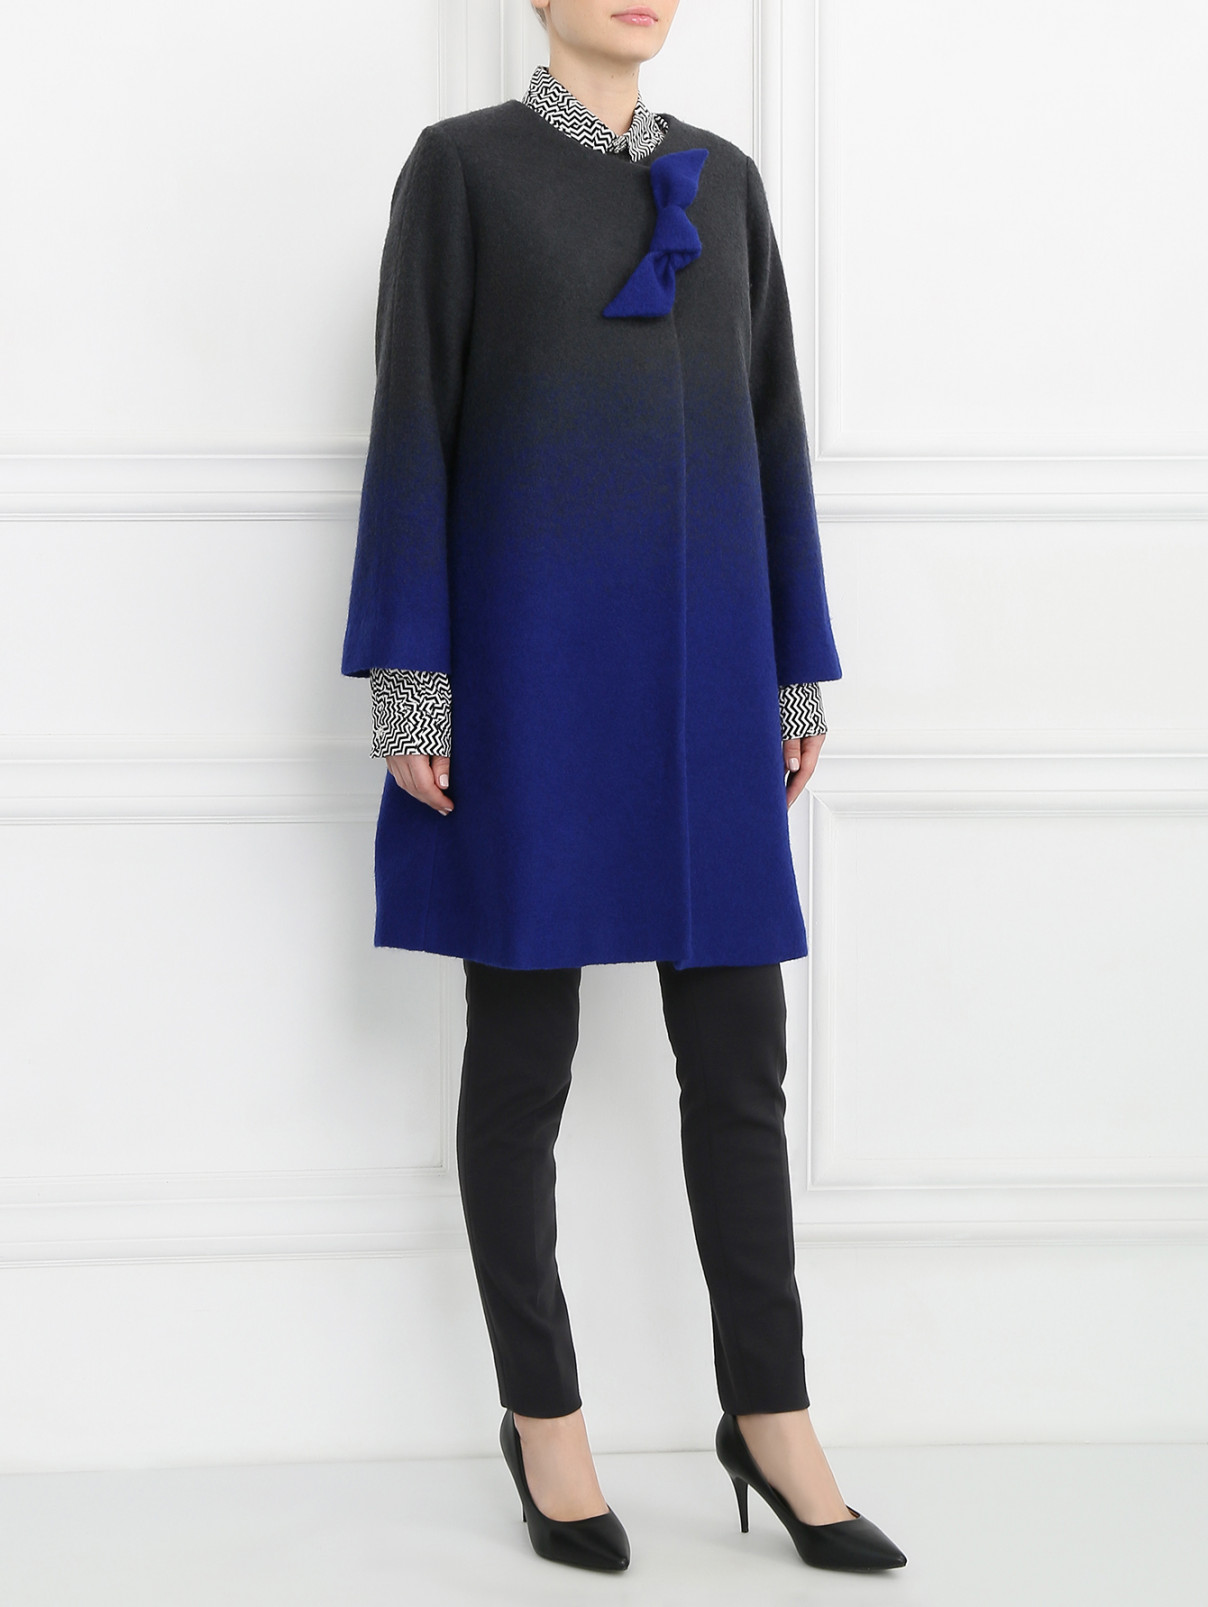 Пальто из шерсти с декором Armani Collezioni  –  Модель Общий вид  – Цвет:  Синий